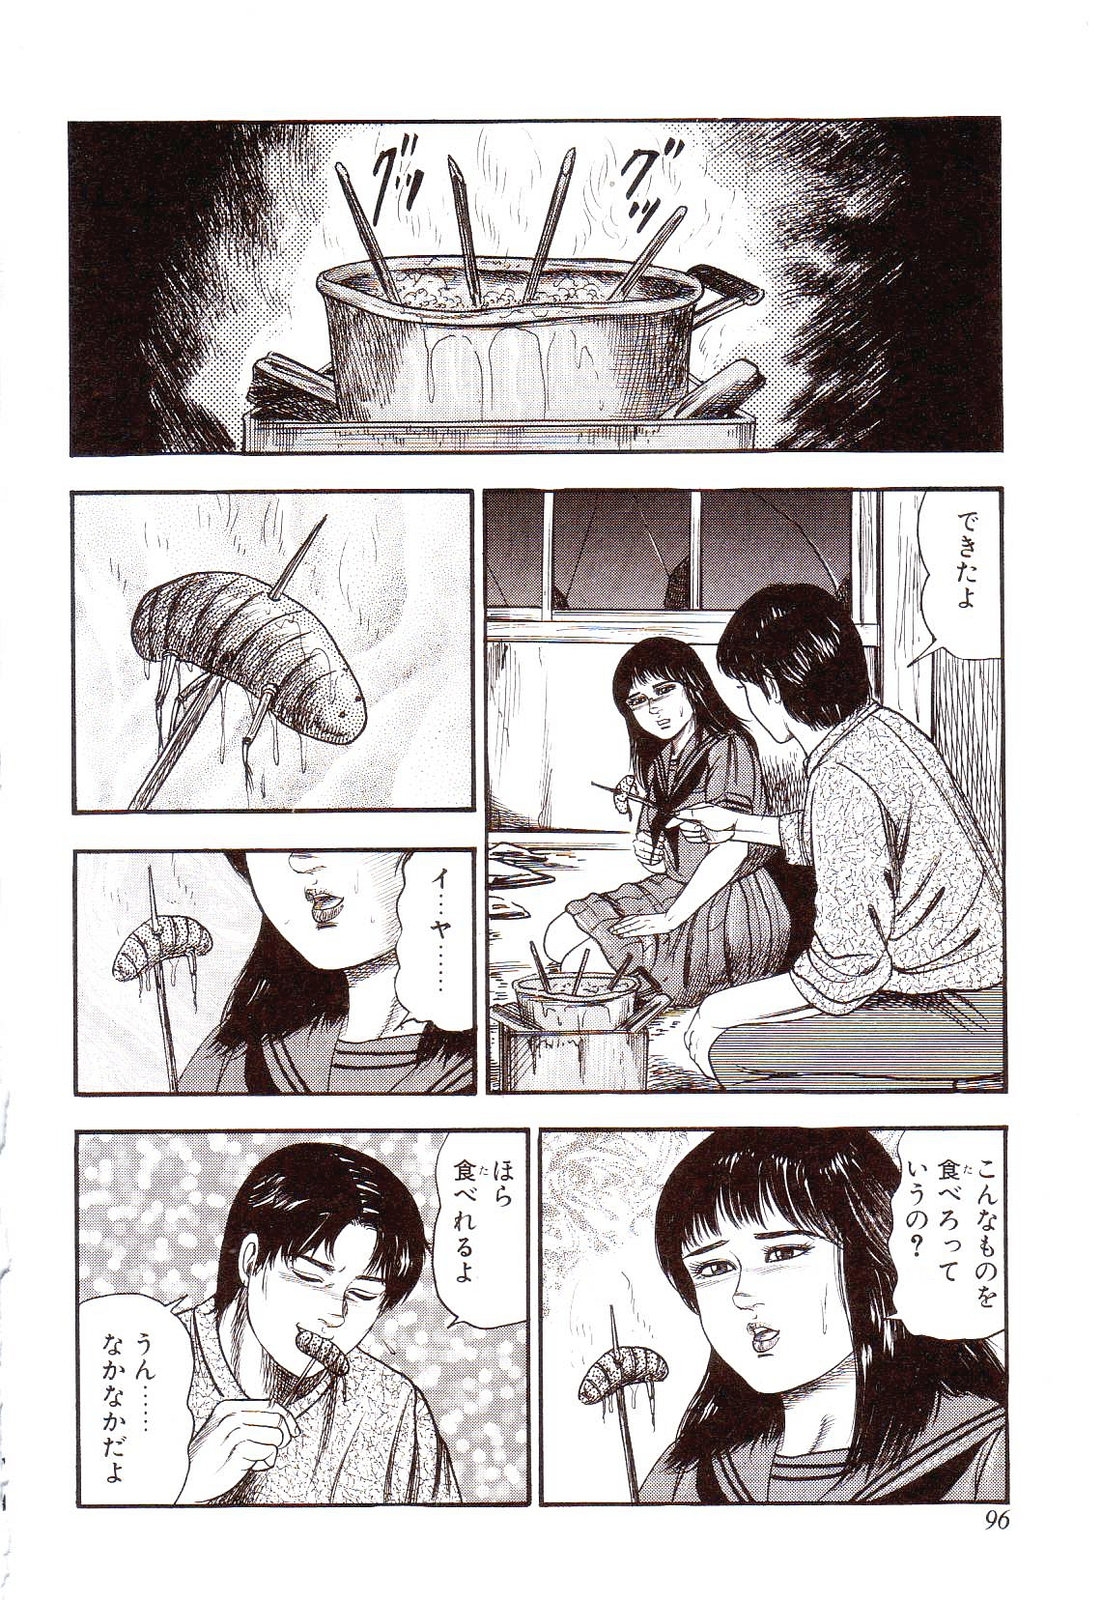 [Sanjou Tomomi] Inu ni Naritai -kyoufu manga shugyoku sakuhinshiyuu- 100